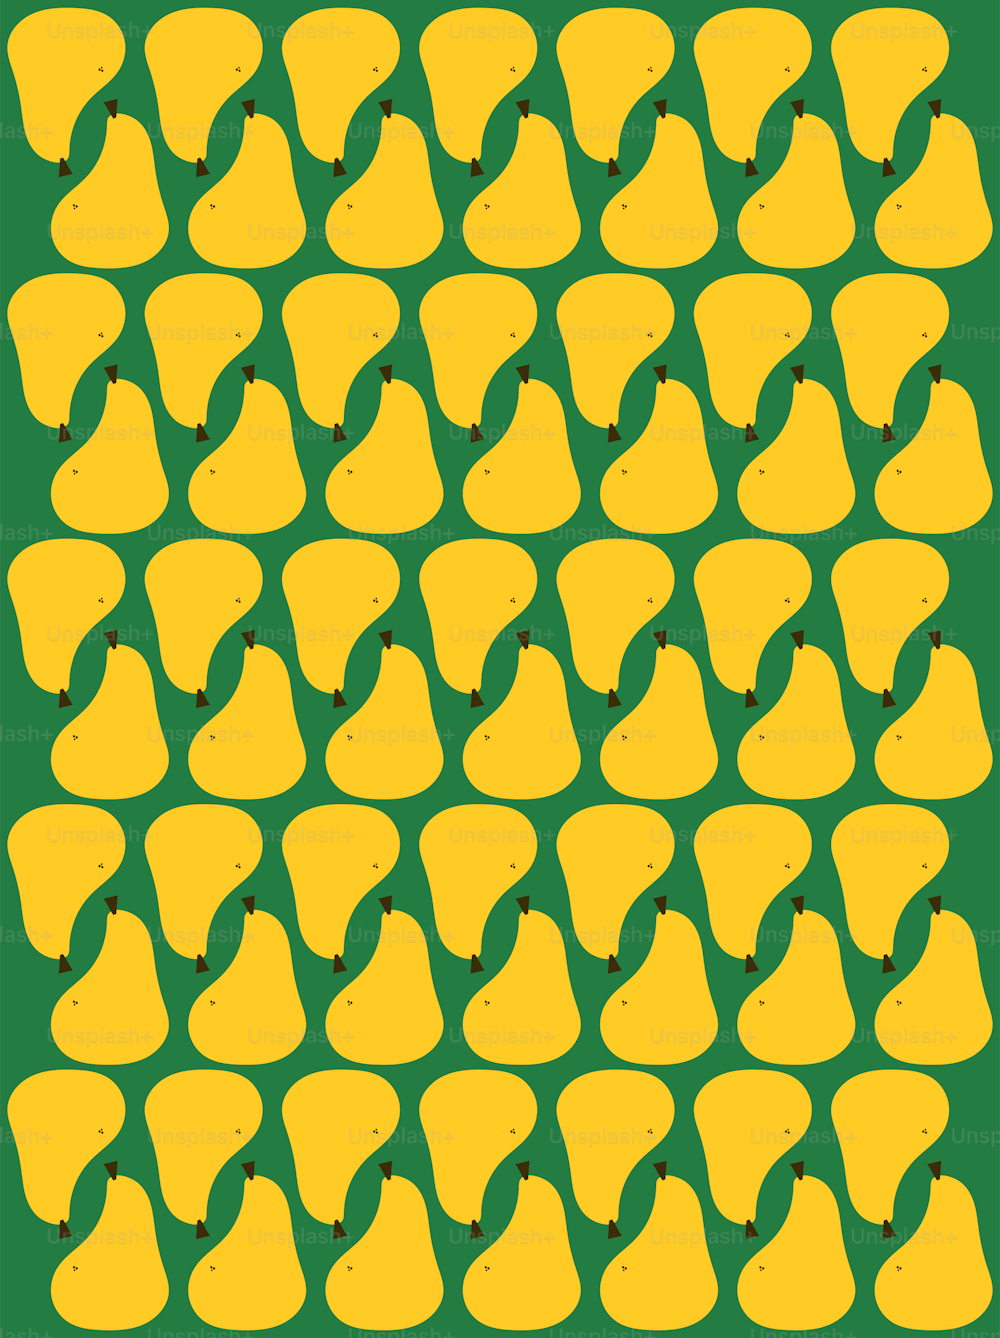 바나나 다발이 있는 녹색과 노란색 배경